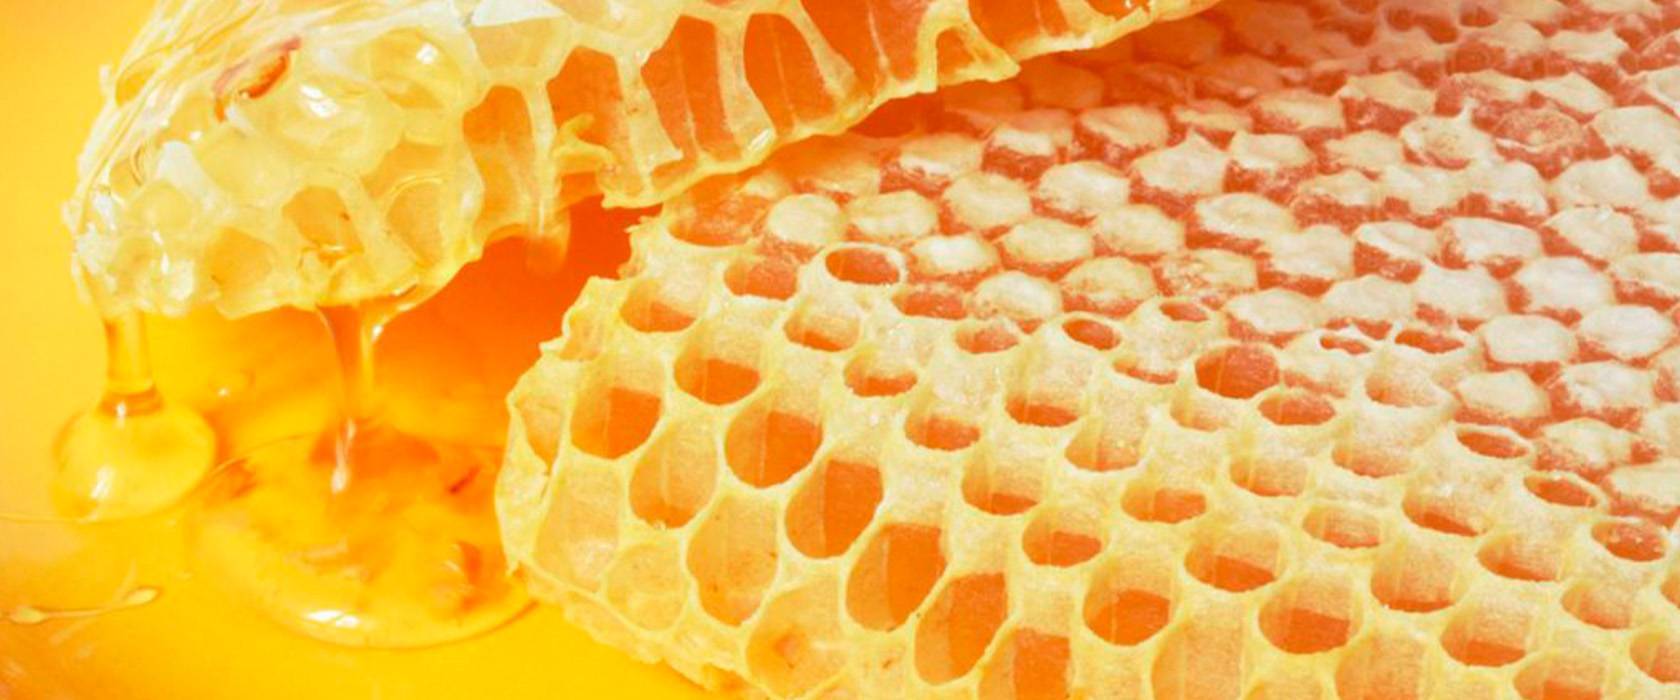 Что такое забрус пчелиный: лечебные свойства, чем полезен забрусовый мед